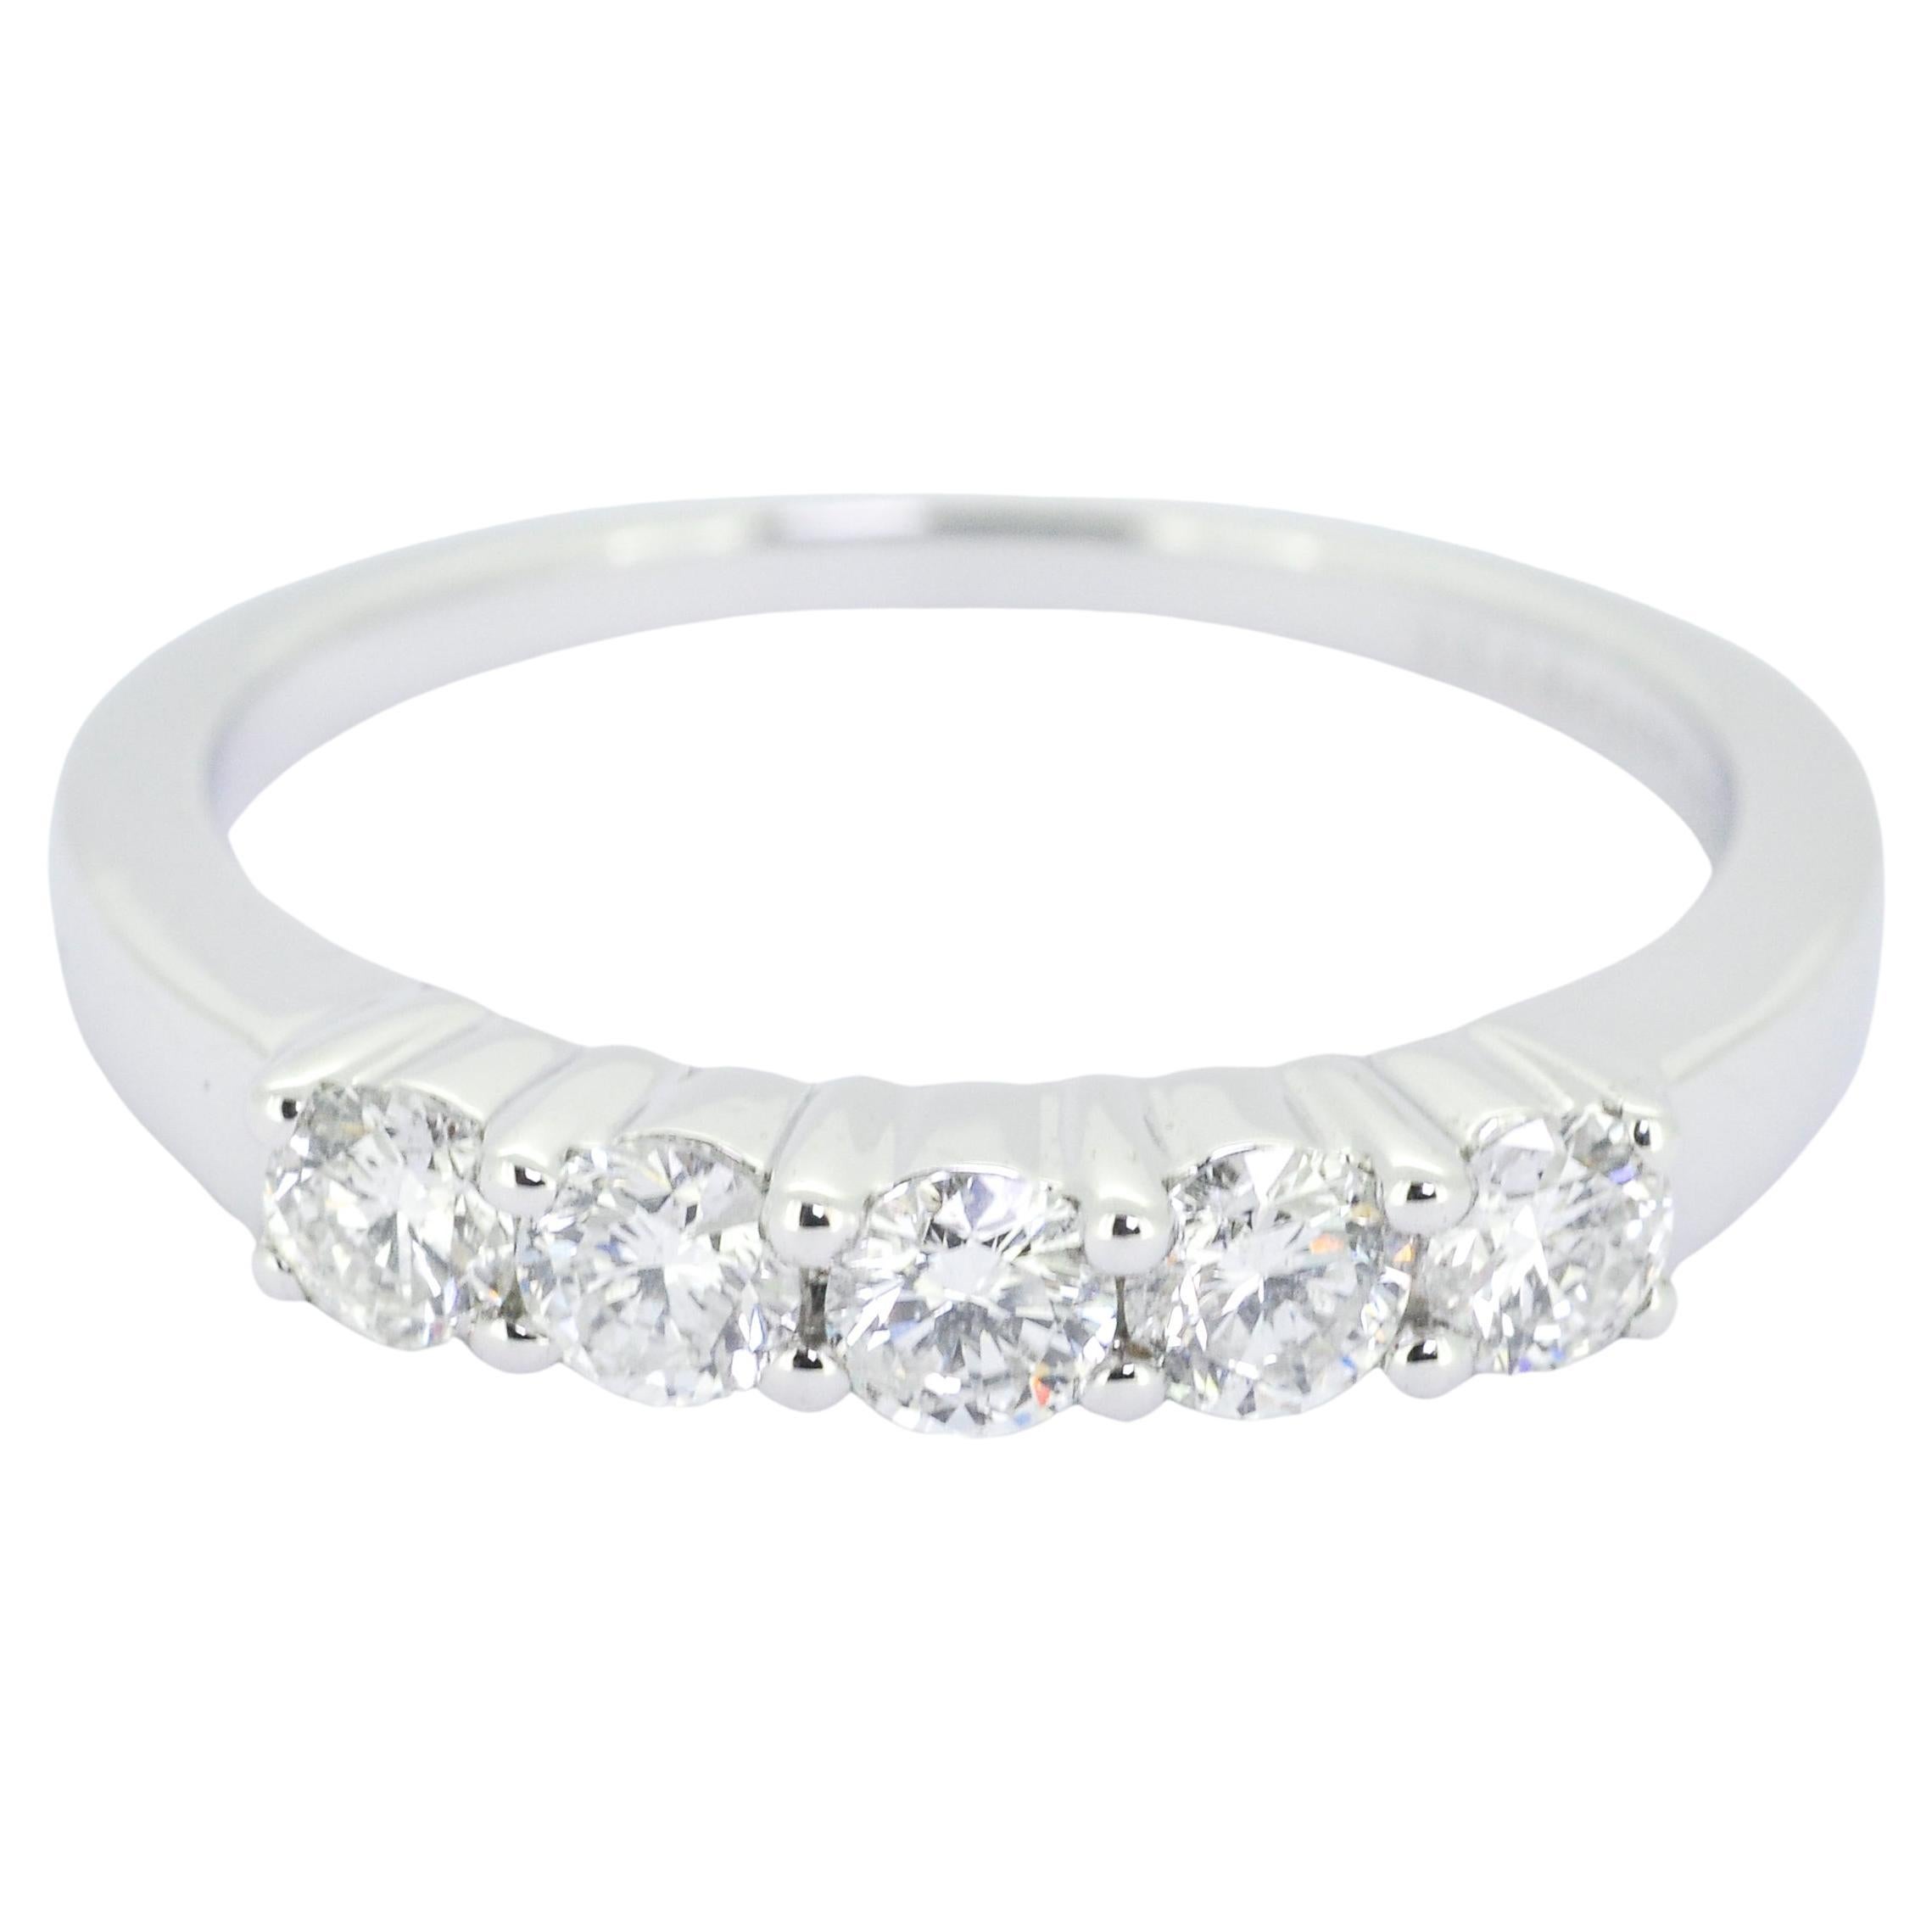 Natural Diamond Ring 0.51 carats 18 Karat White Gold 5 Diamonds Engagement Ring